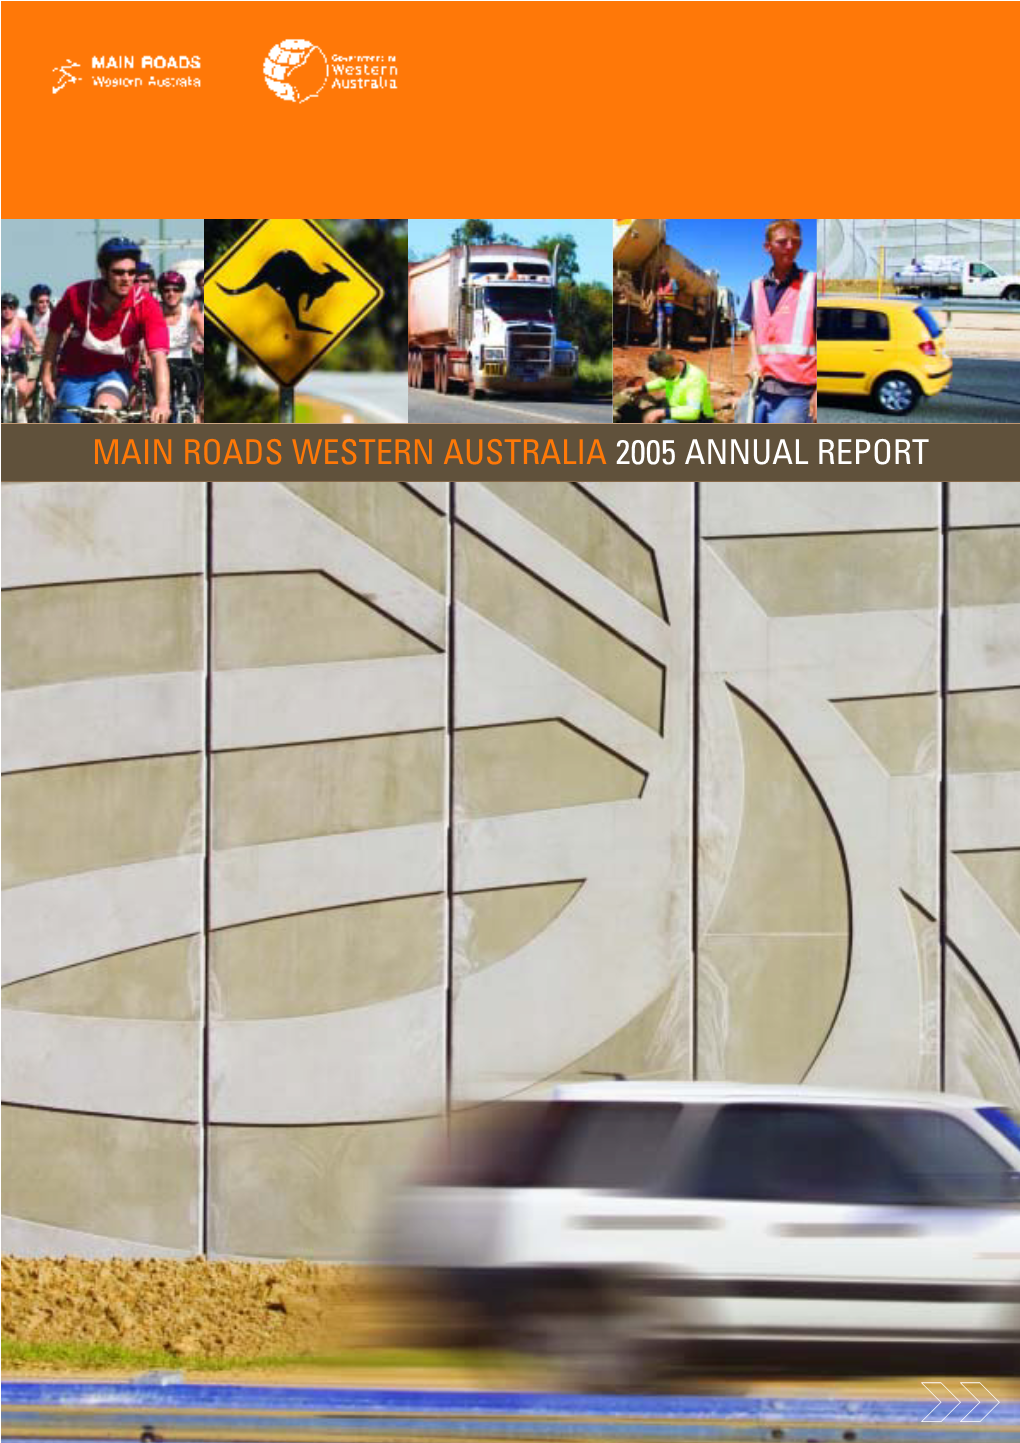 MAIN ROADS WESTERN AUSTRALIA 2005 ANNUAL REPORT 1 Main Roads Western Australia 2005 Annual Report